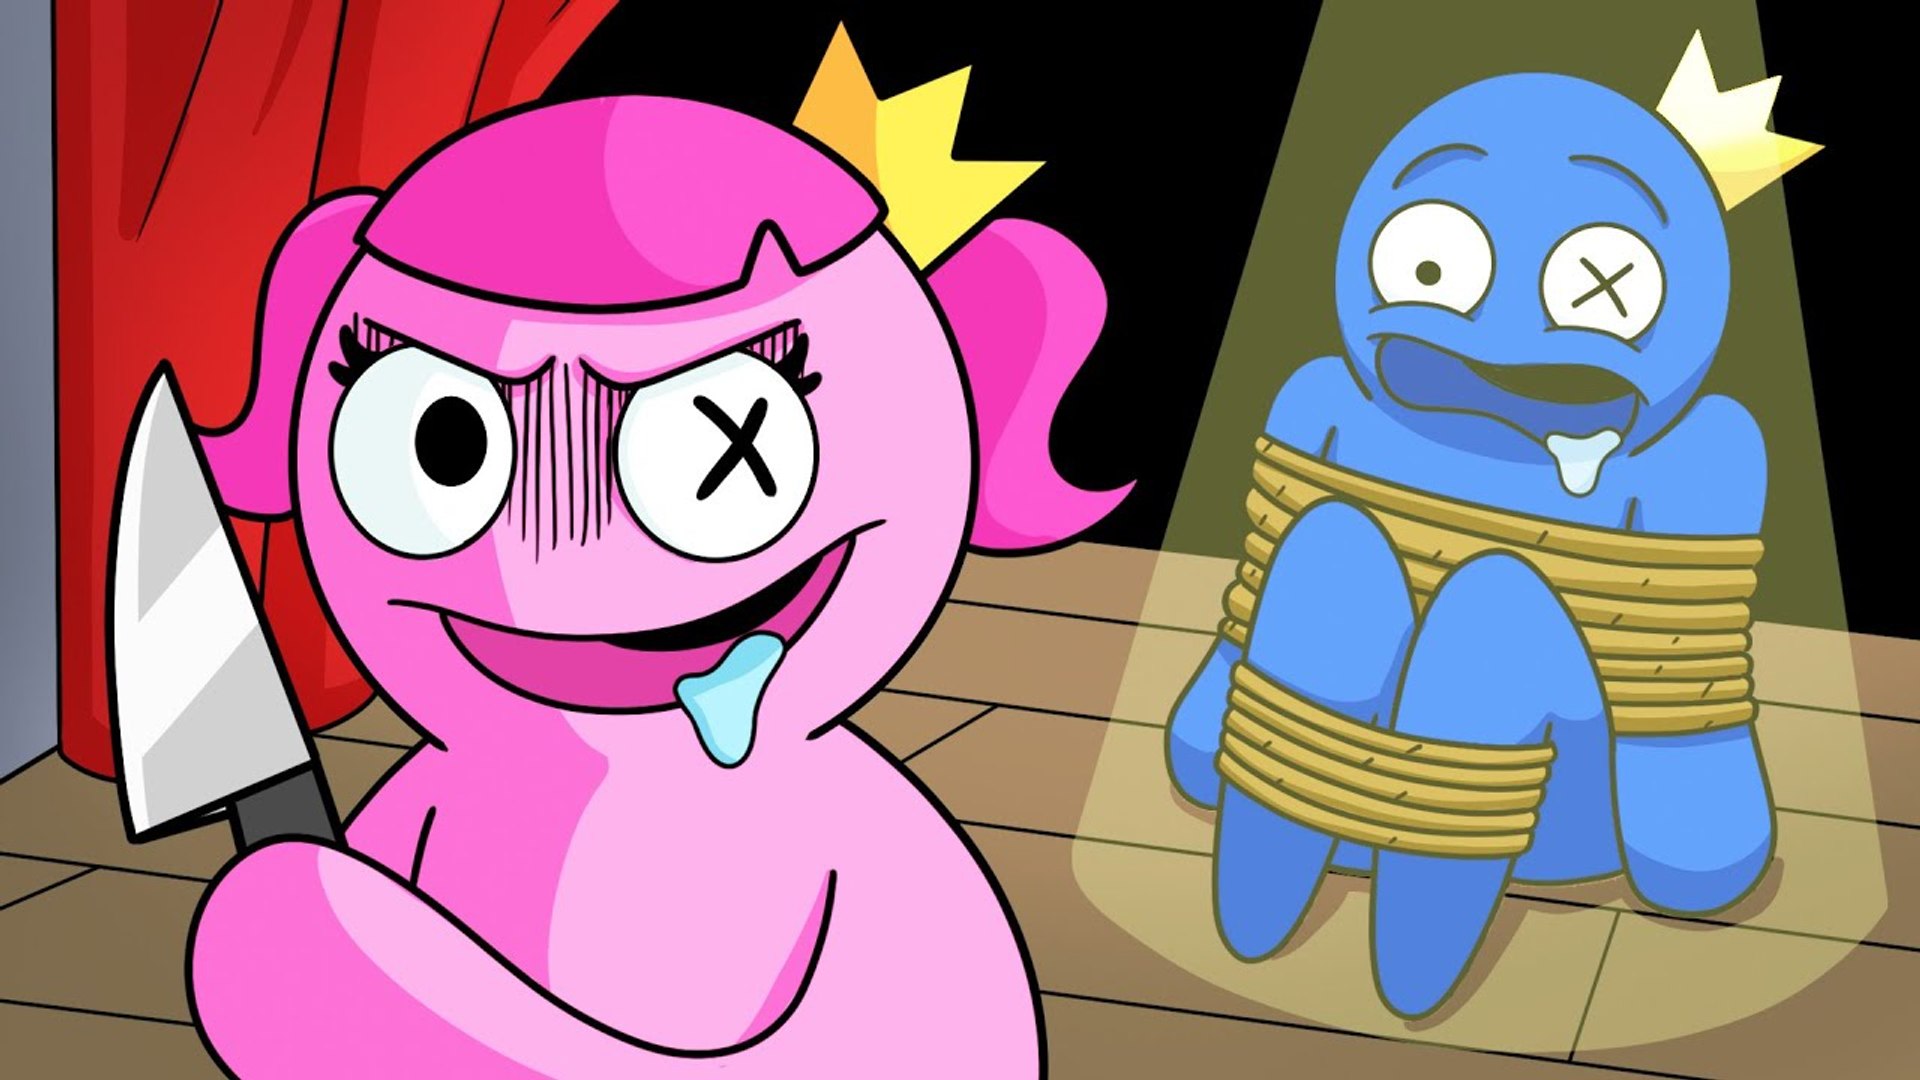 BLUE Has an Evil TWIN SISTER_! (Cartoon Animation)